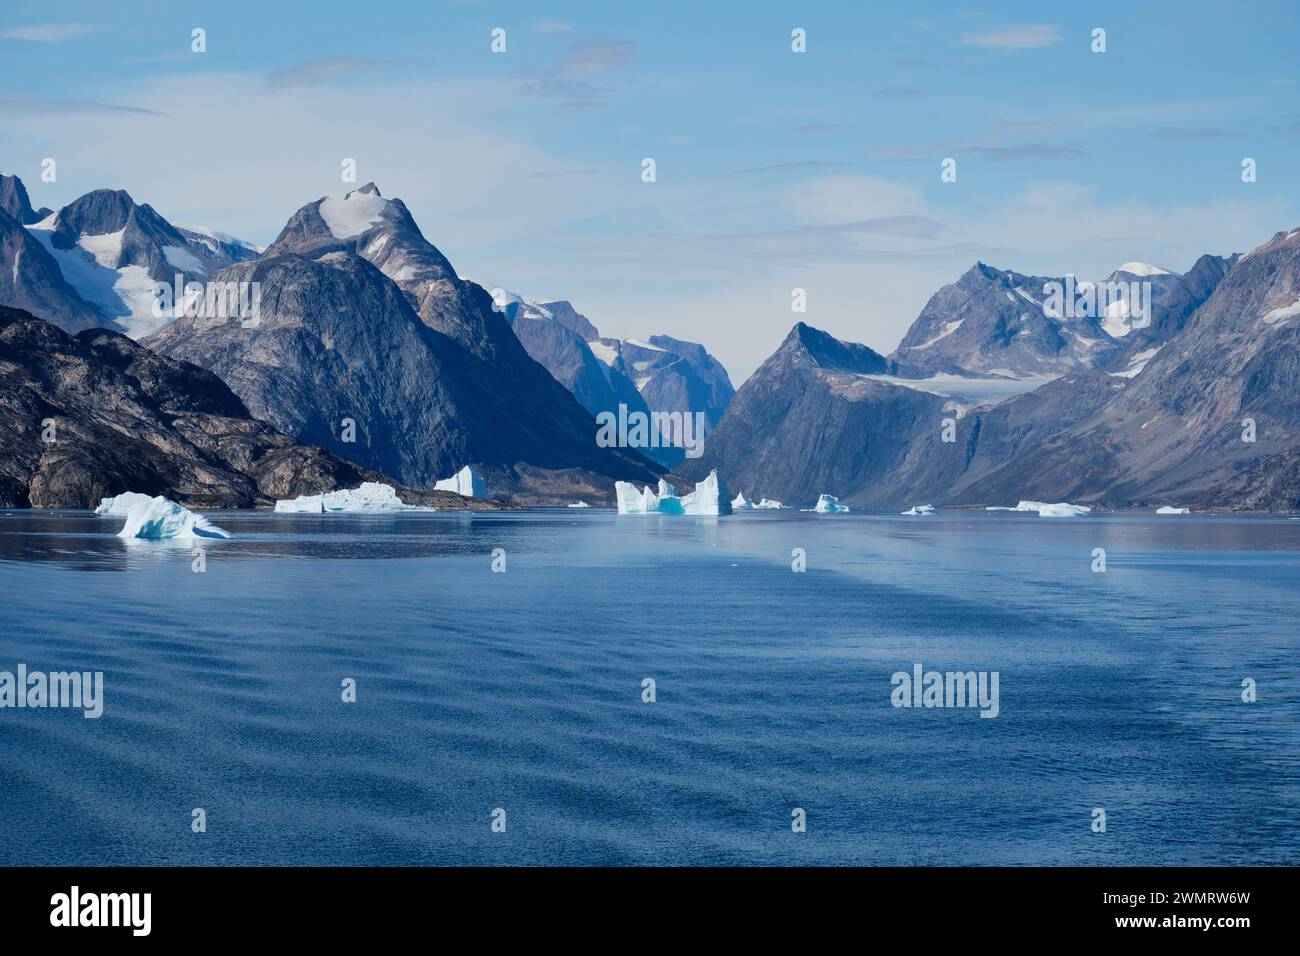 Les montagnes déchiquetées et glaciaires de l'est du Groenland sont entourées d'icebergs et d'une mer bleue brillante Banque D'Images